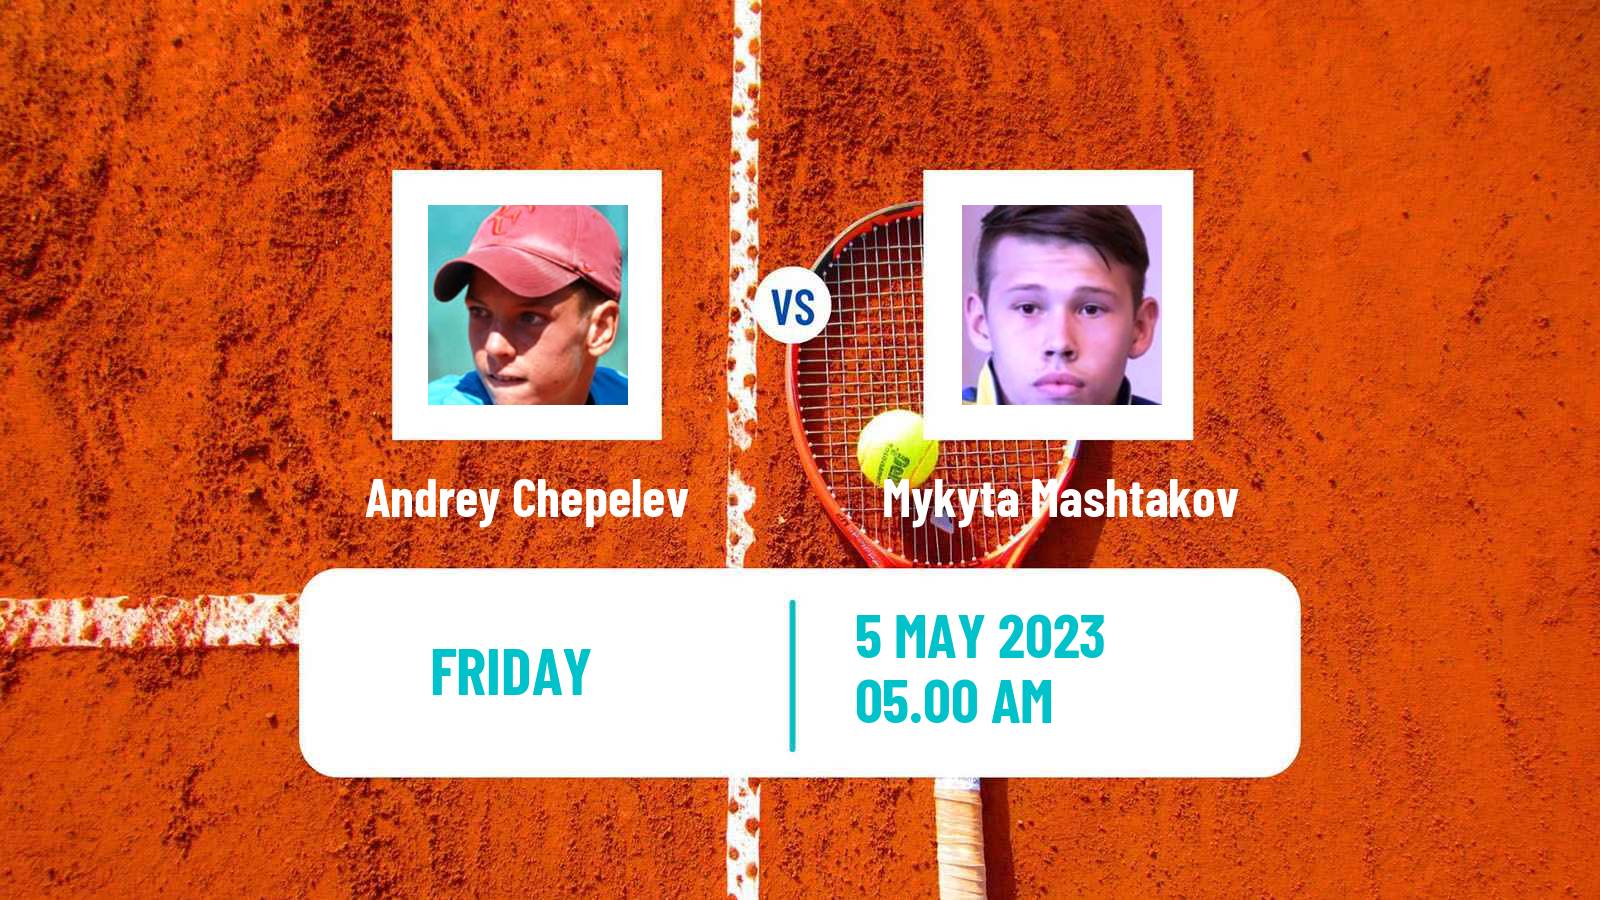 Tennis ITF Tournaments Andrey Chepelev - Mykyta Mashtakov